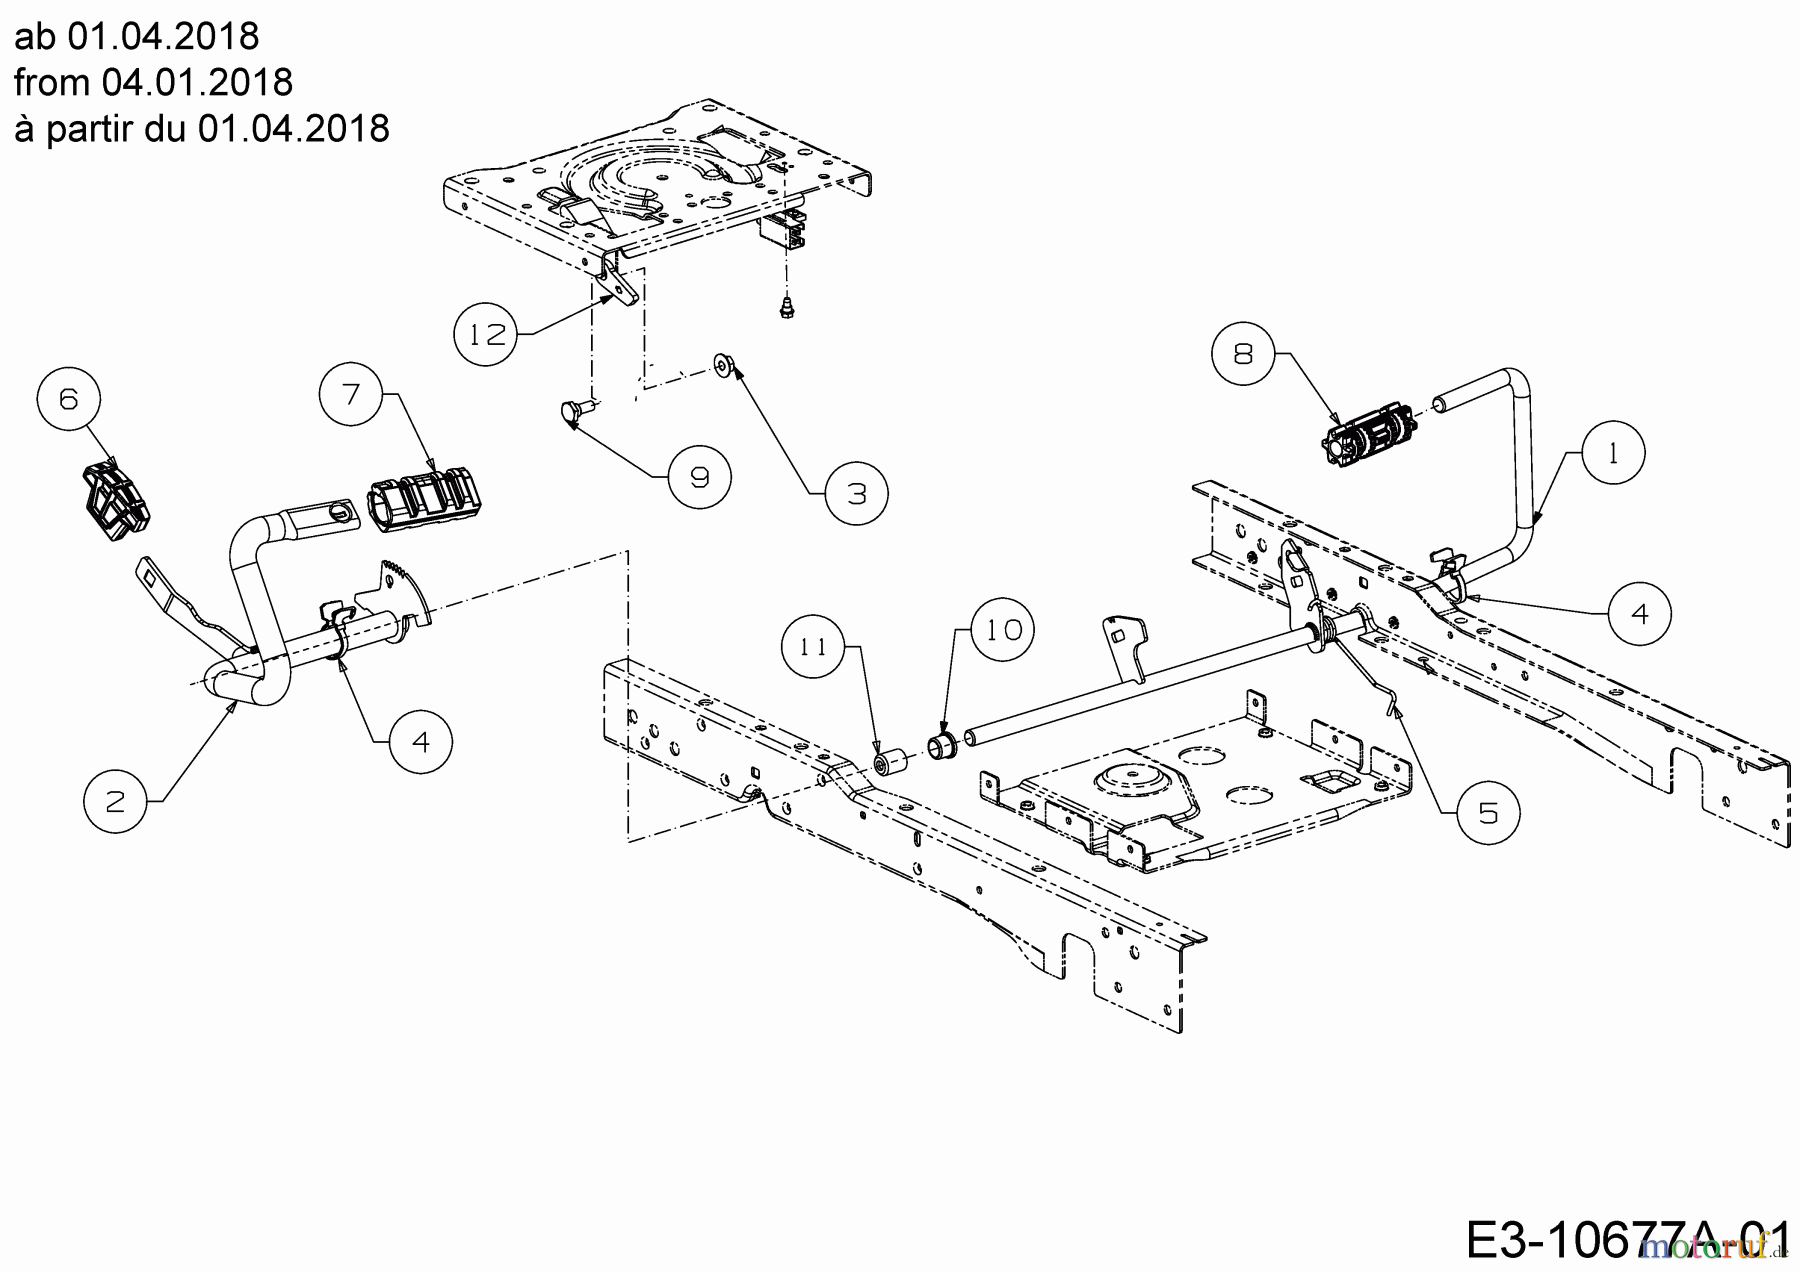  Cub Cadet Lawn tractors XT2 PS107 13CGA1CS603 (2021) Pedals from 04.01.2018